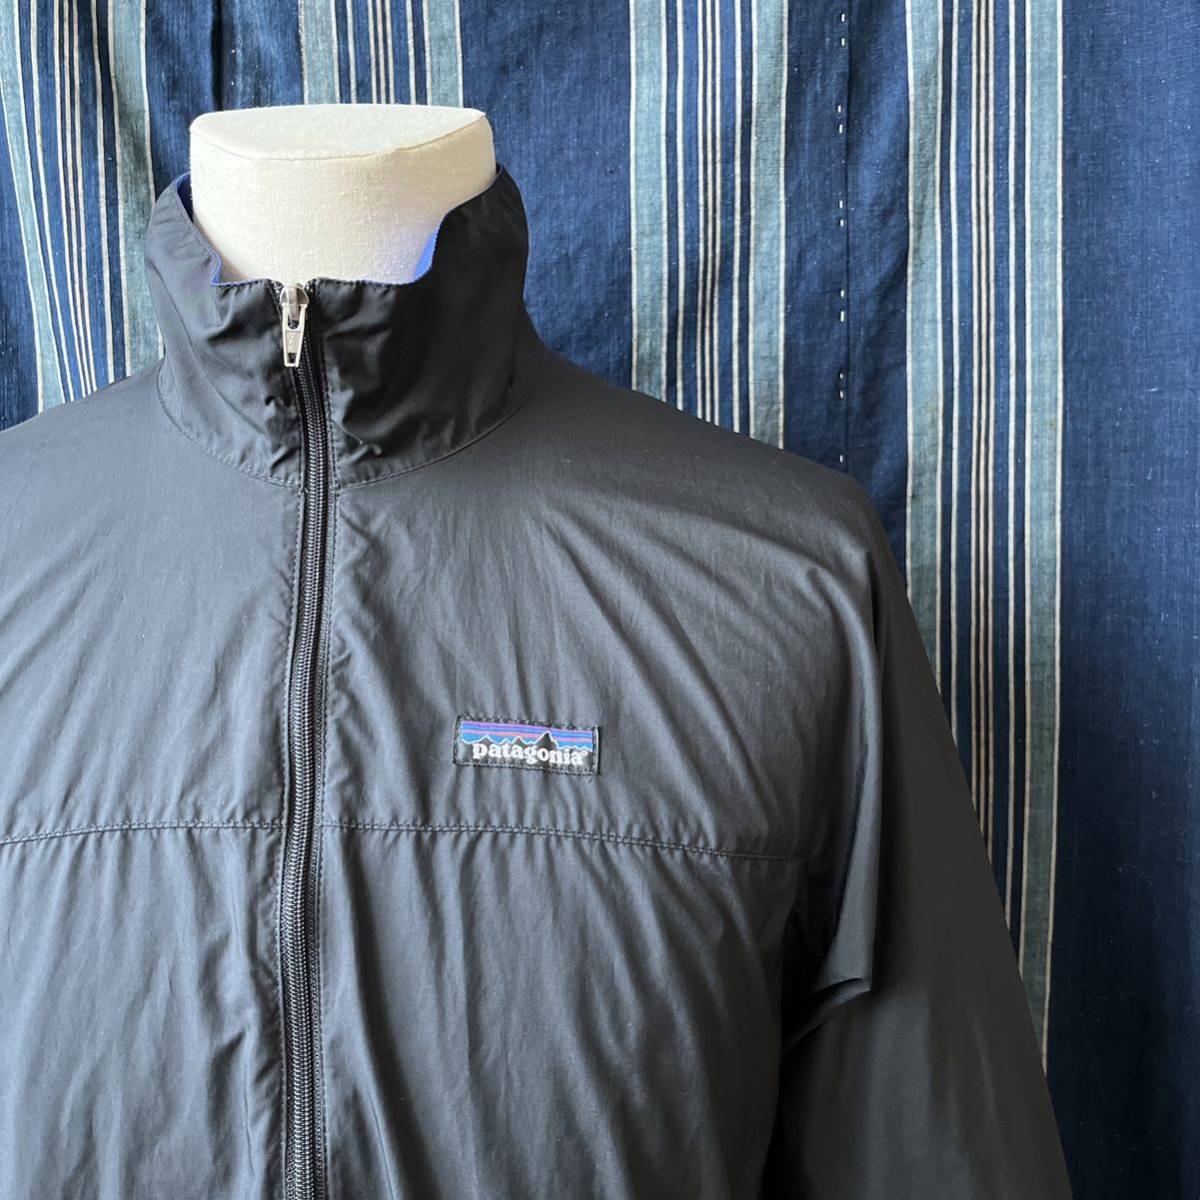 世界的に pullover velocity patagonia 90s jacket 90年代 old